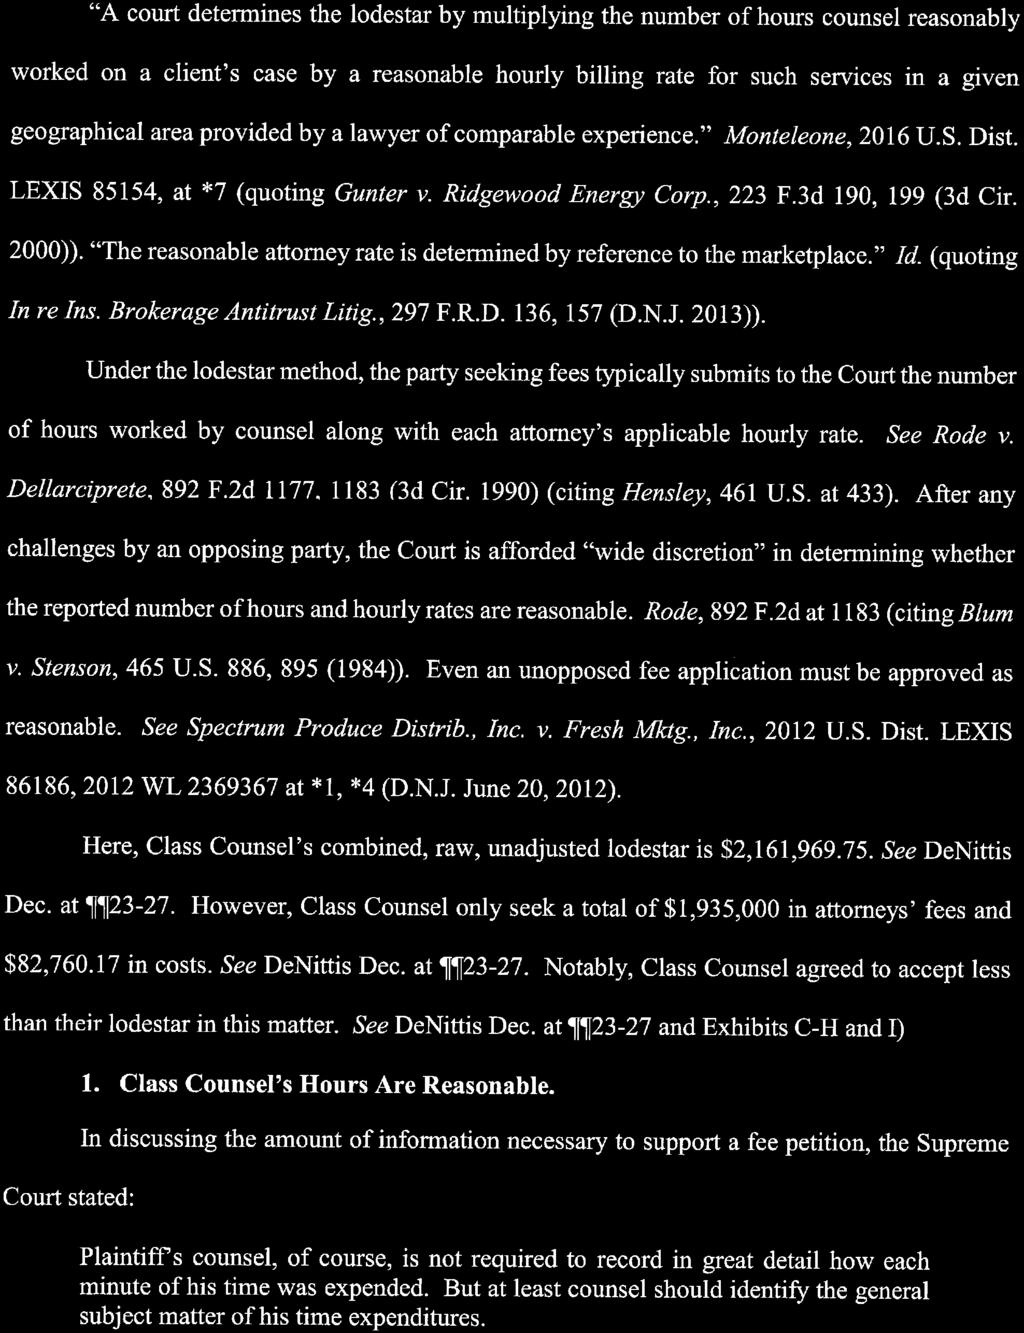 Case 1:16-cv-02374-JBS-JS Document 56-1